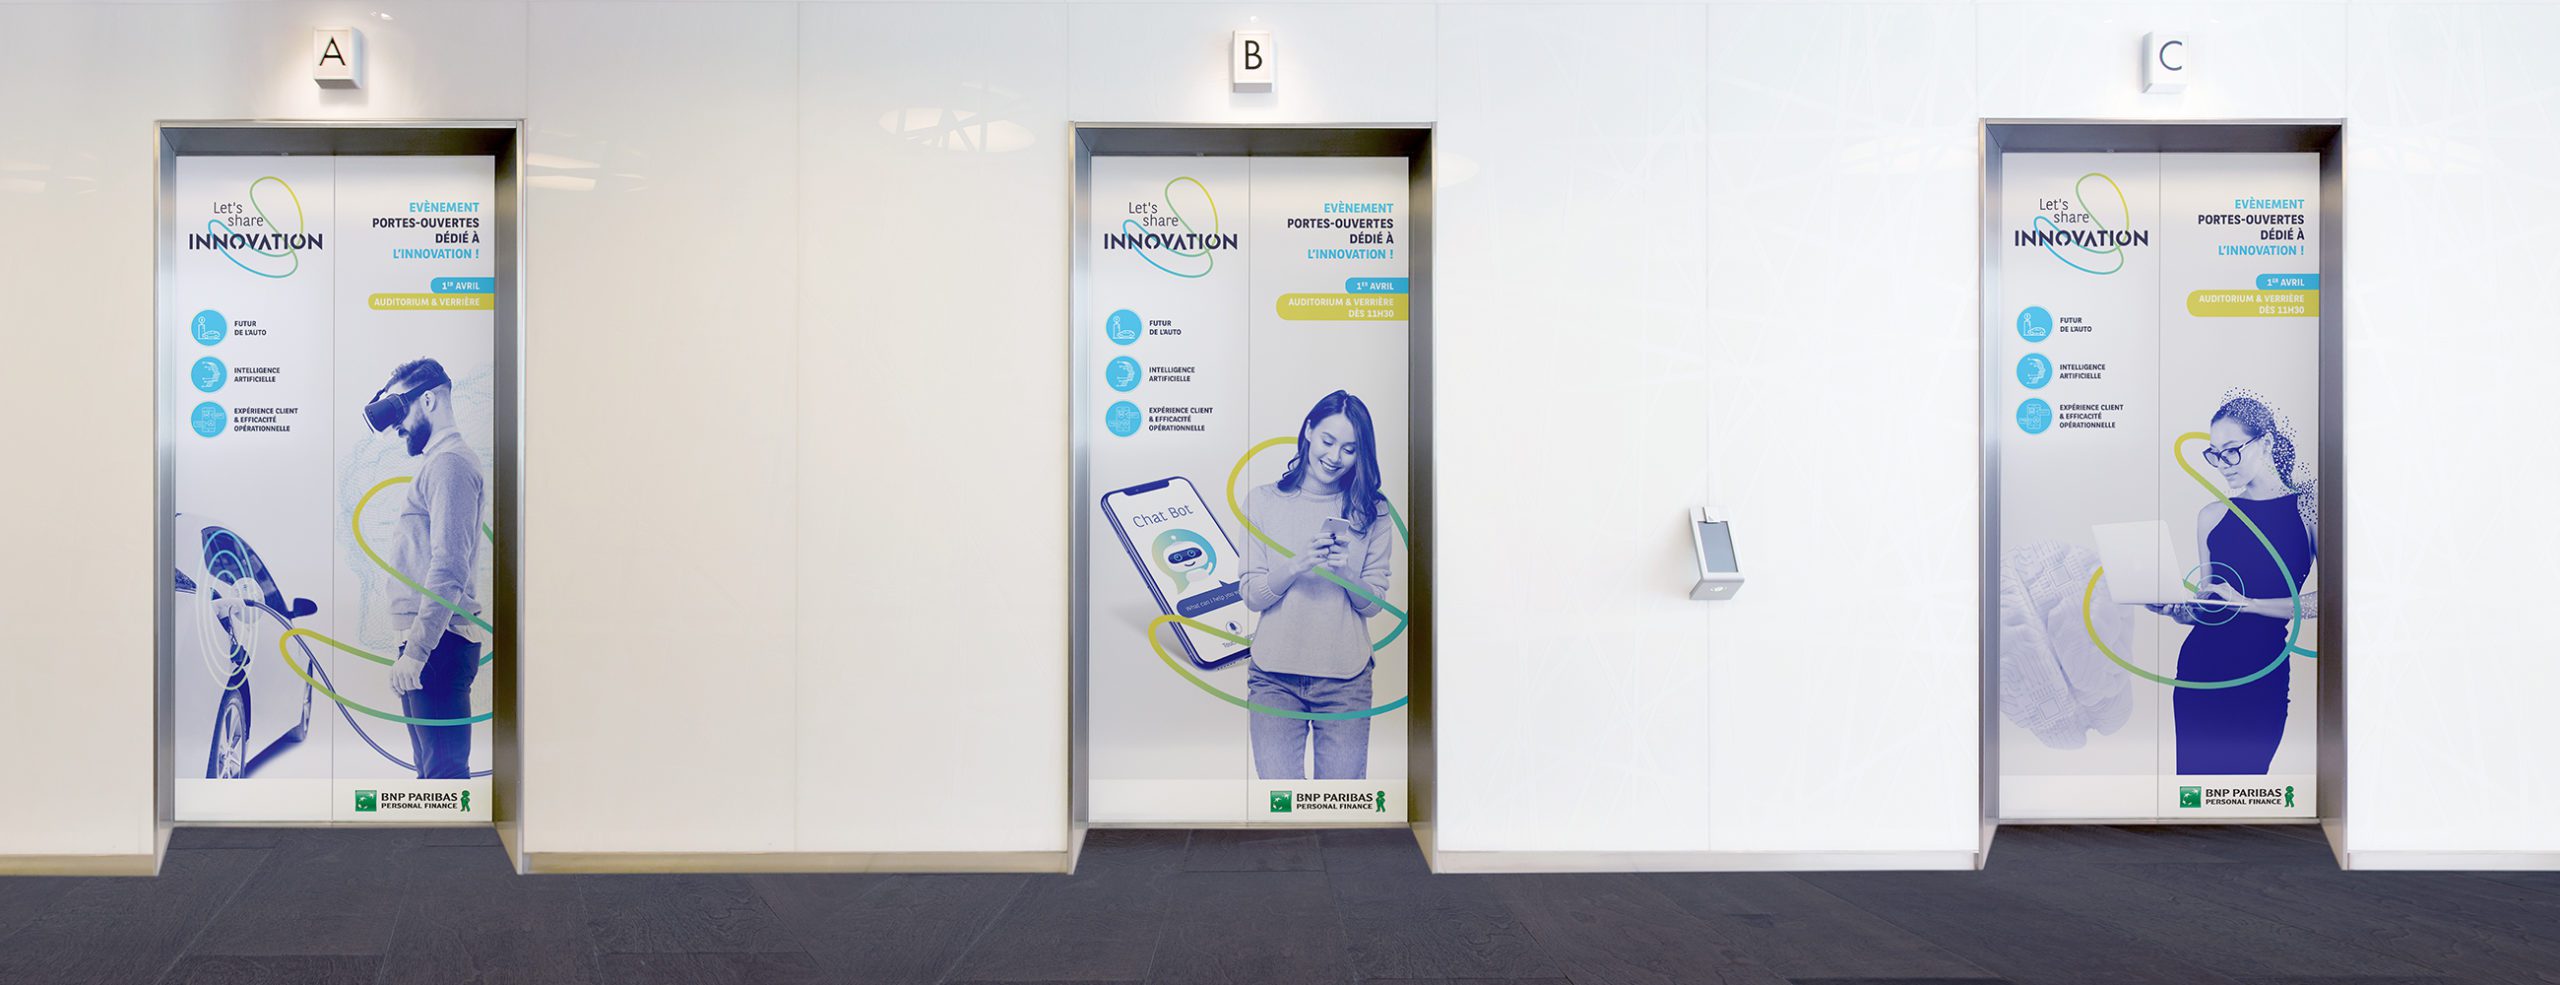 Habillages graphique portes d'ascenseurs innovation